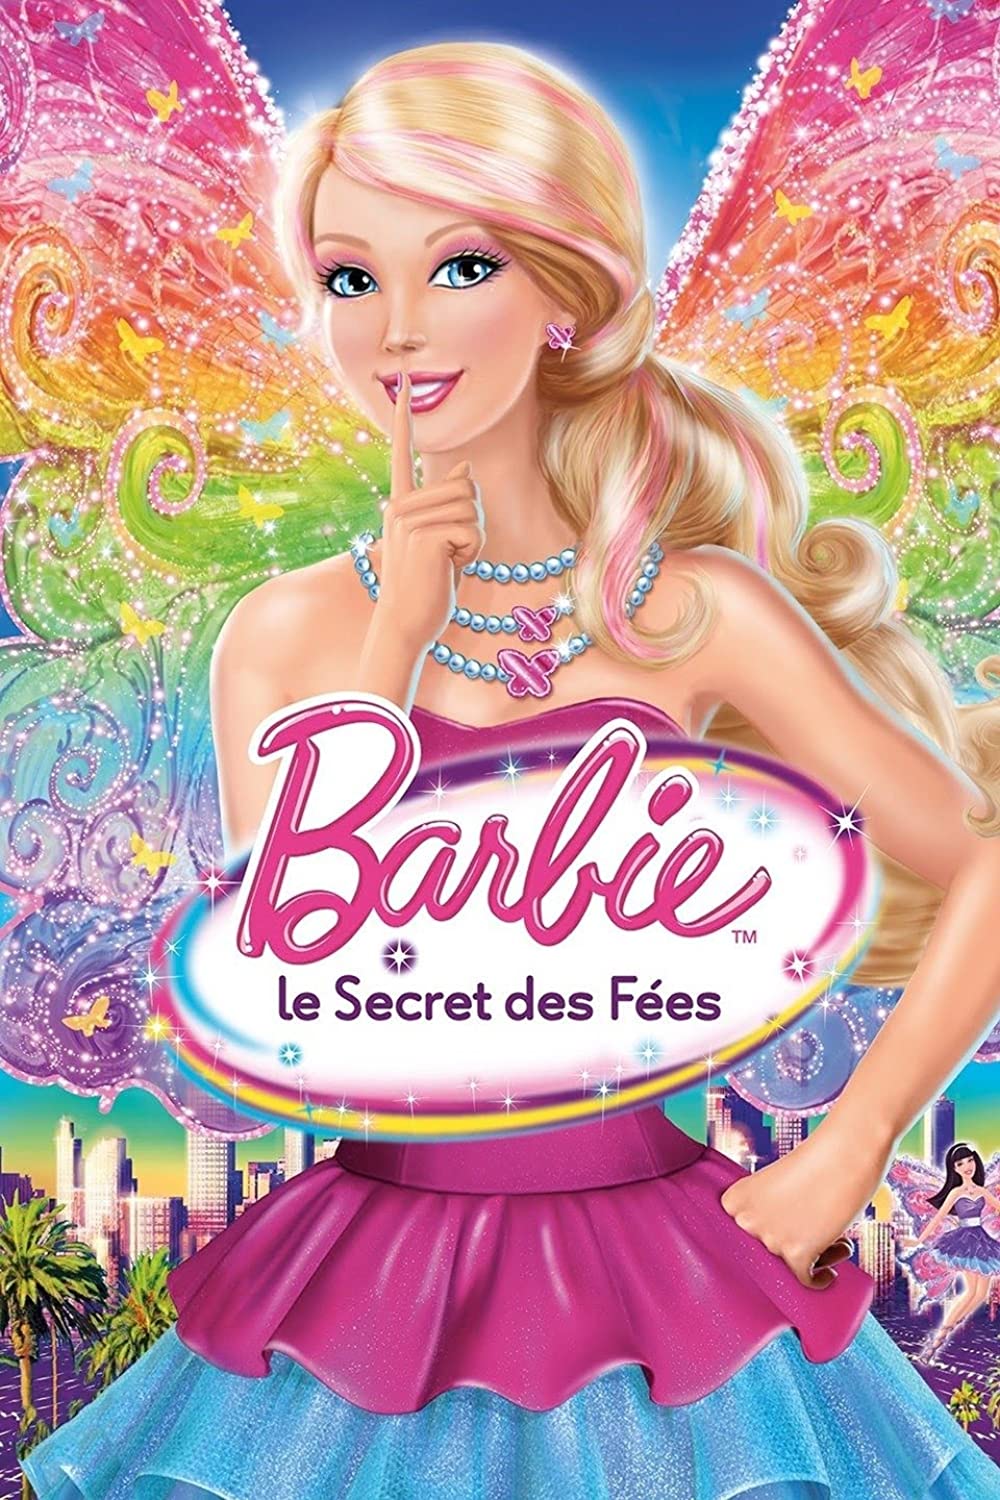 Download Barbie: A Fairy Secret Movie | Barbie: A Fairy Secret Review